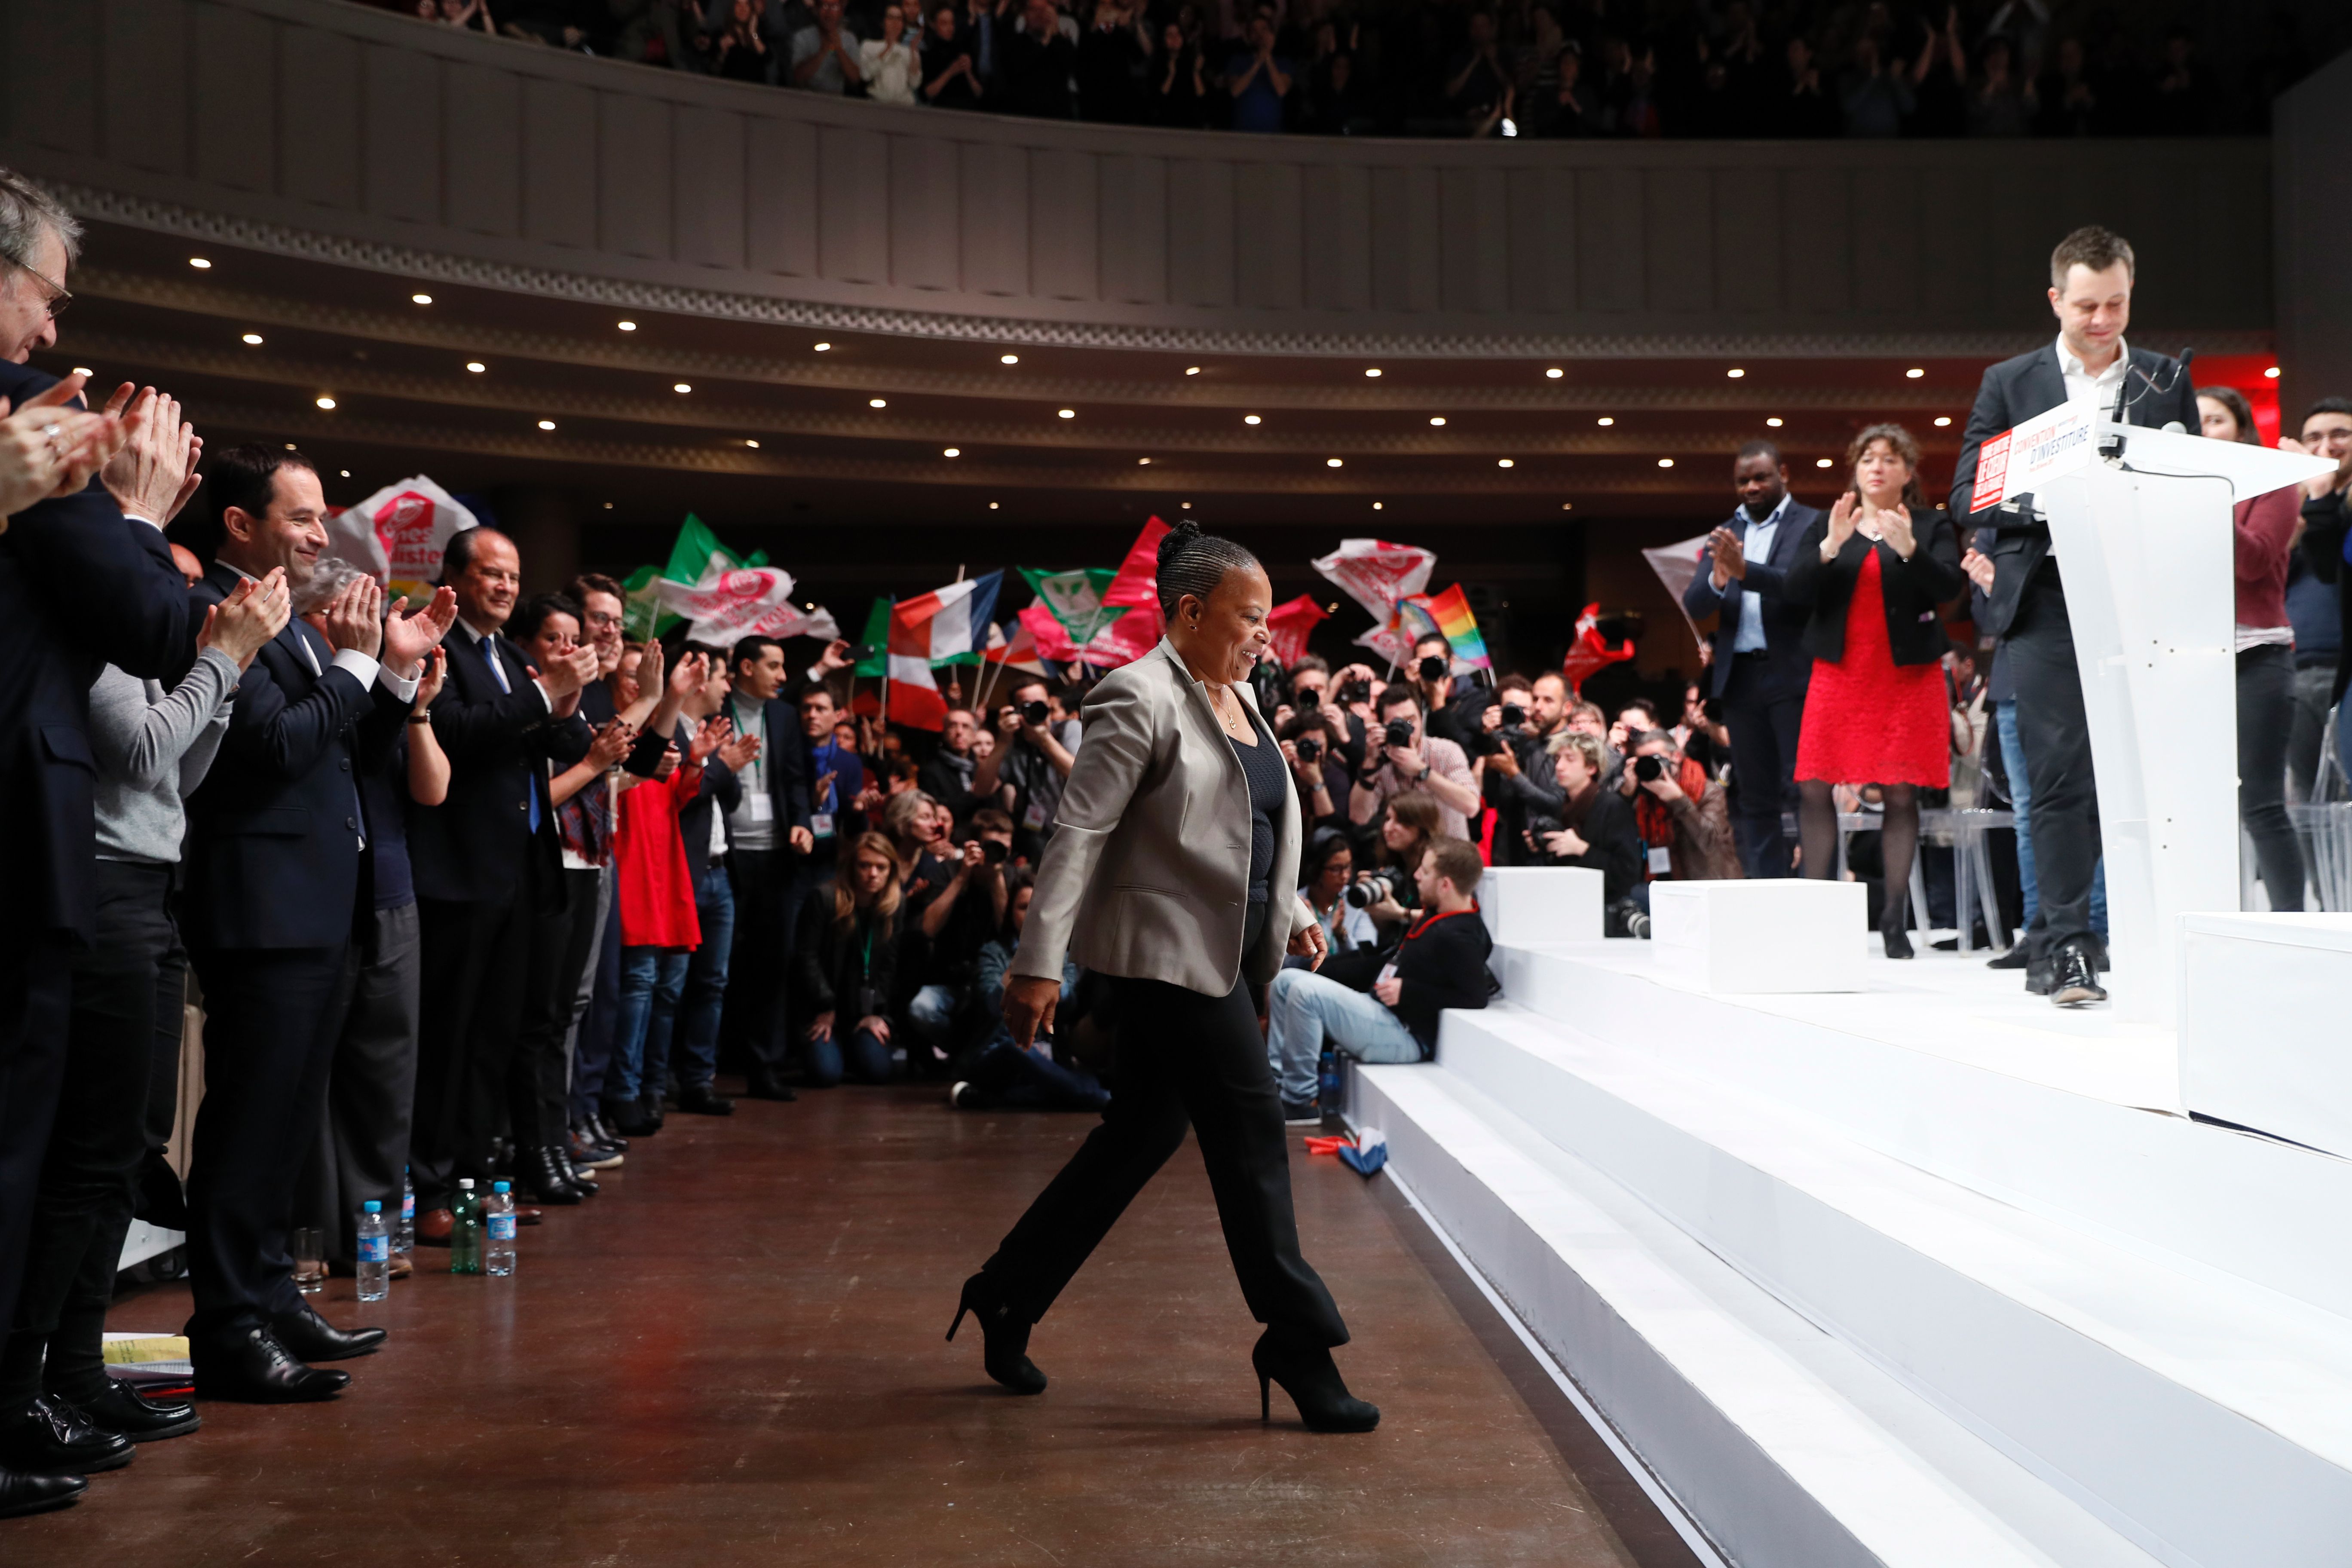 وزيرة العدل الفرنسية كرستين تيوبرا تصعد على المنصة خلال اجتماع الحزب - أ ف ب